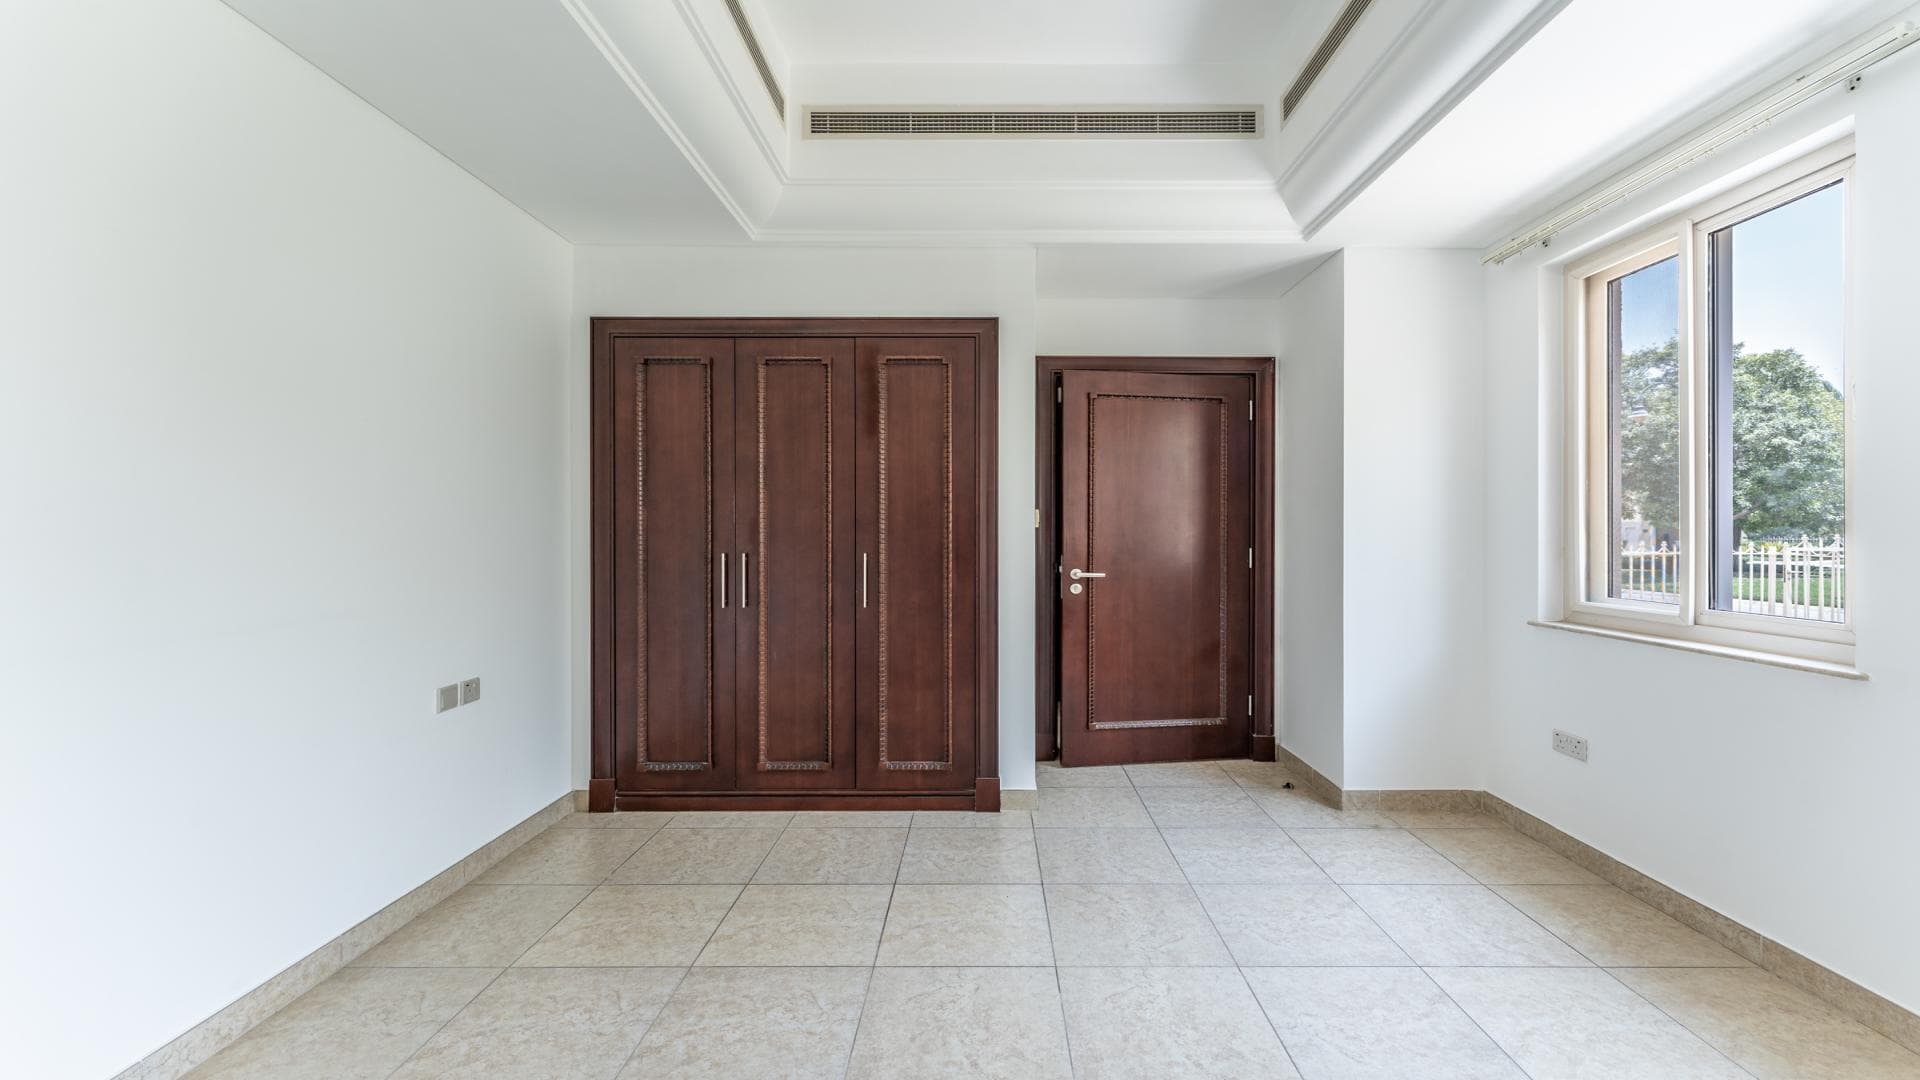 5 Bedroom Villa For Rent Al Thamam 35 Lp36218 F44d95a1d71da80.jpg